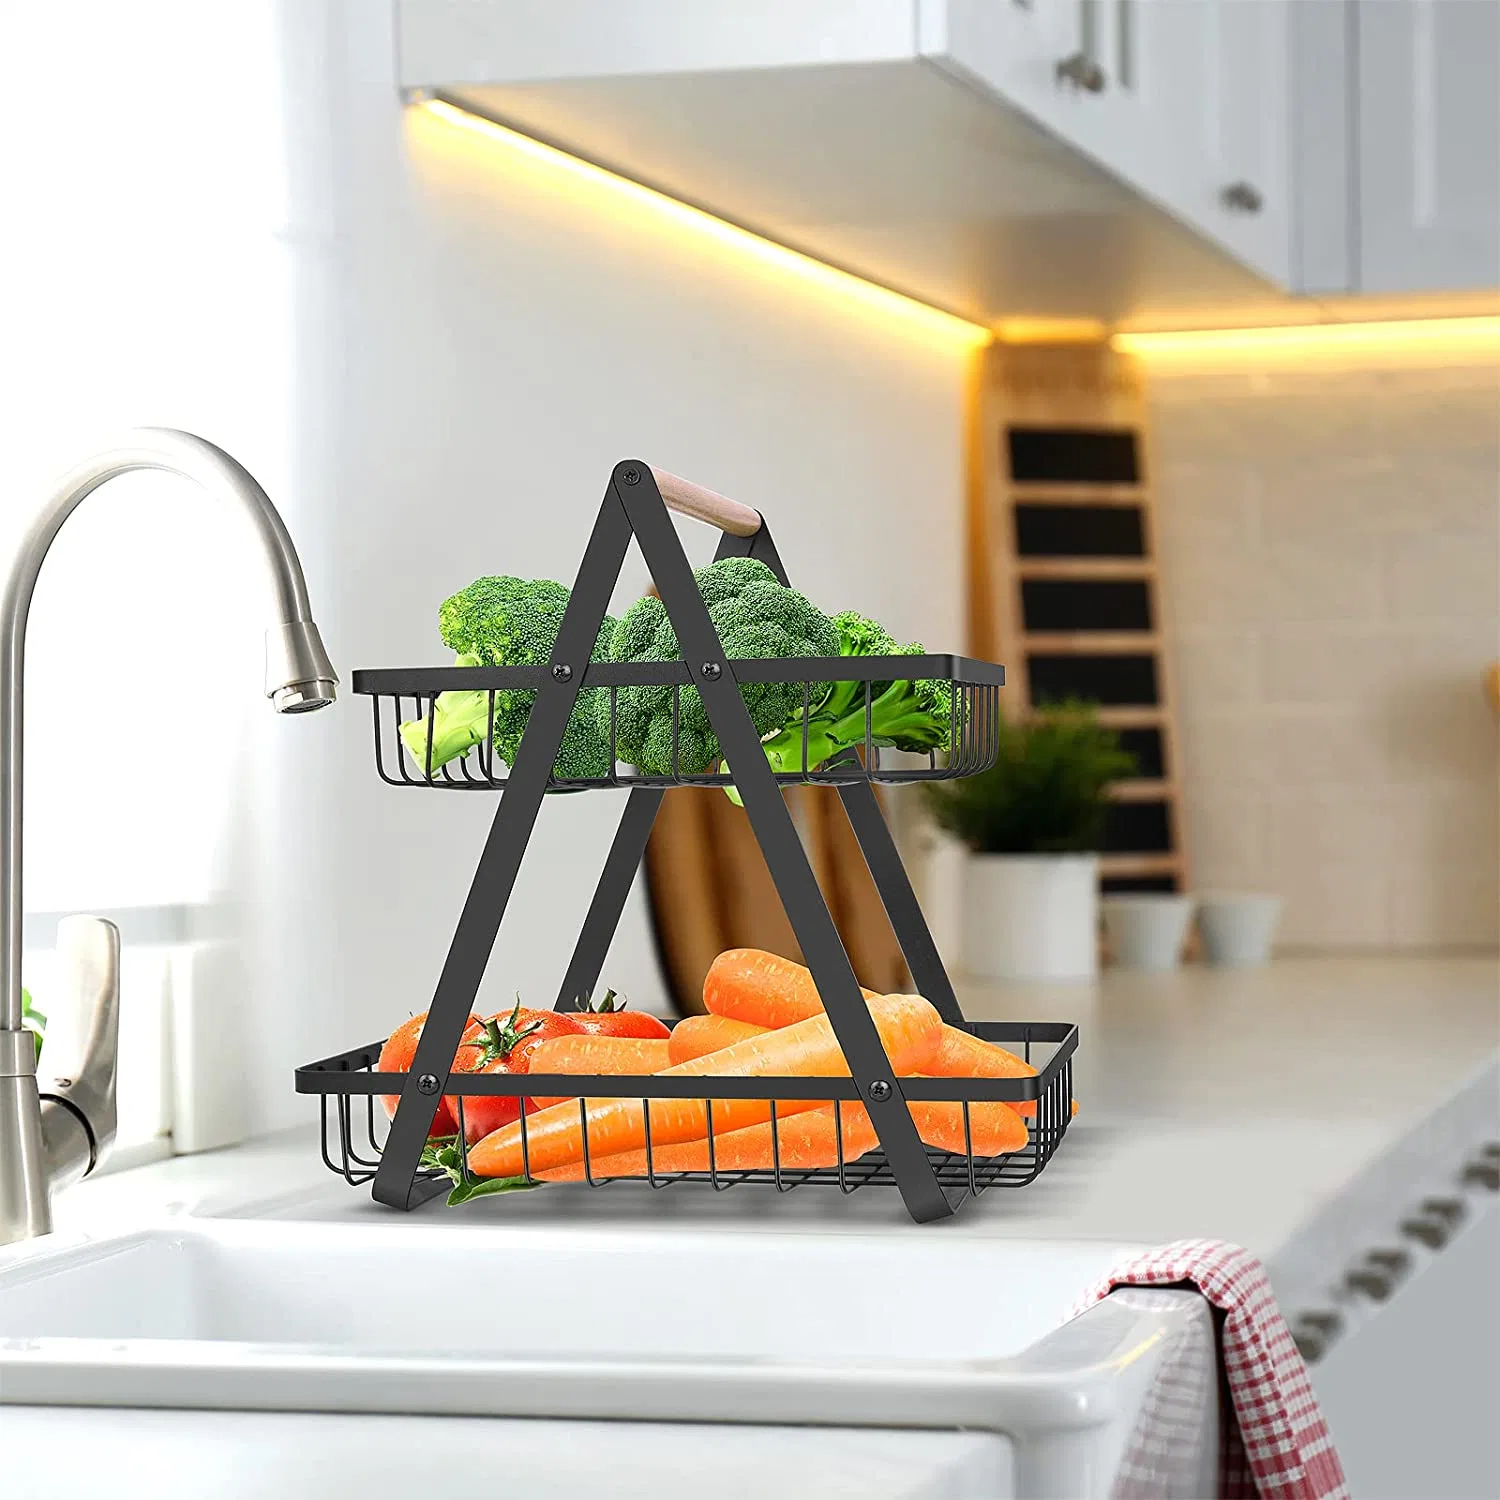 Organizador de encimera de cocina decorativo para el hogar, soporte de pan de alambre desmontable, soporte de metal para cuenco, cesta de frutas de 2 niveles